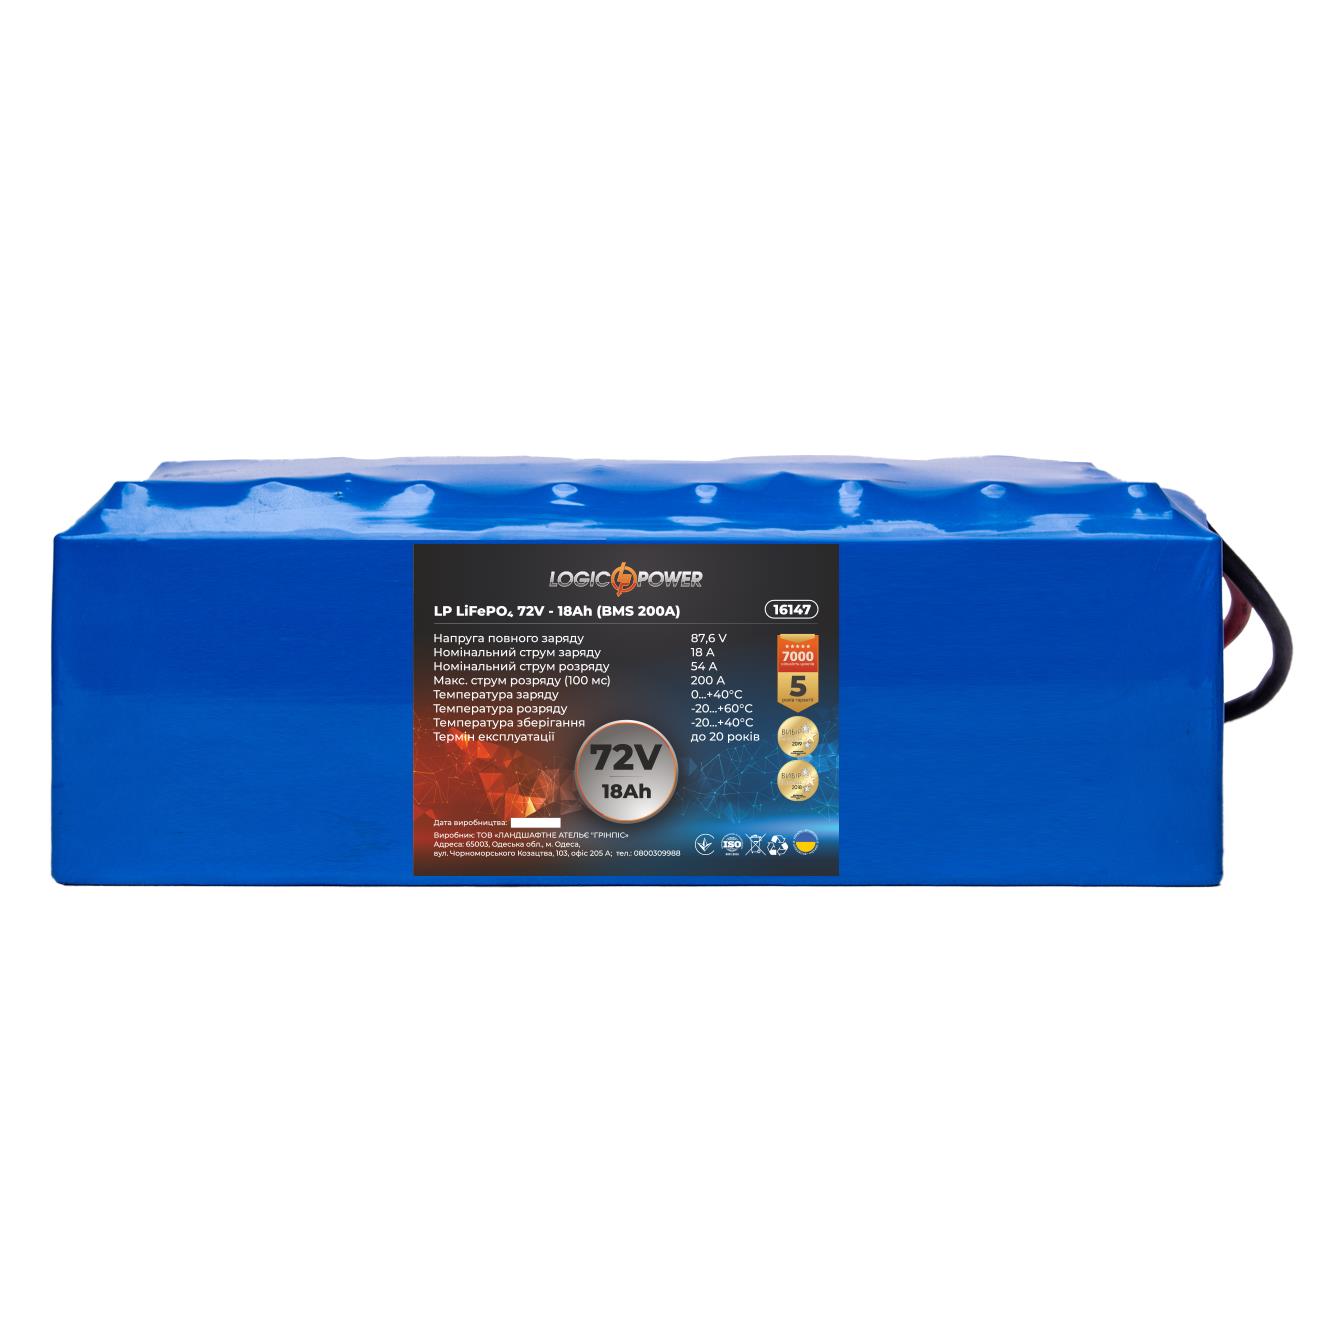 Аккумулятор литий-железо-фосфатный LogicPower LP LiFePO4 72V - 18 Ah (BMS 200A) (16147)